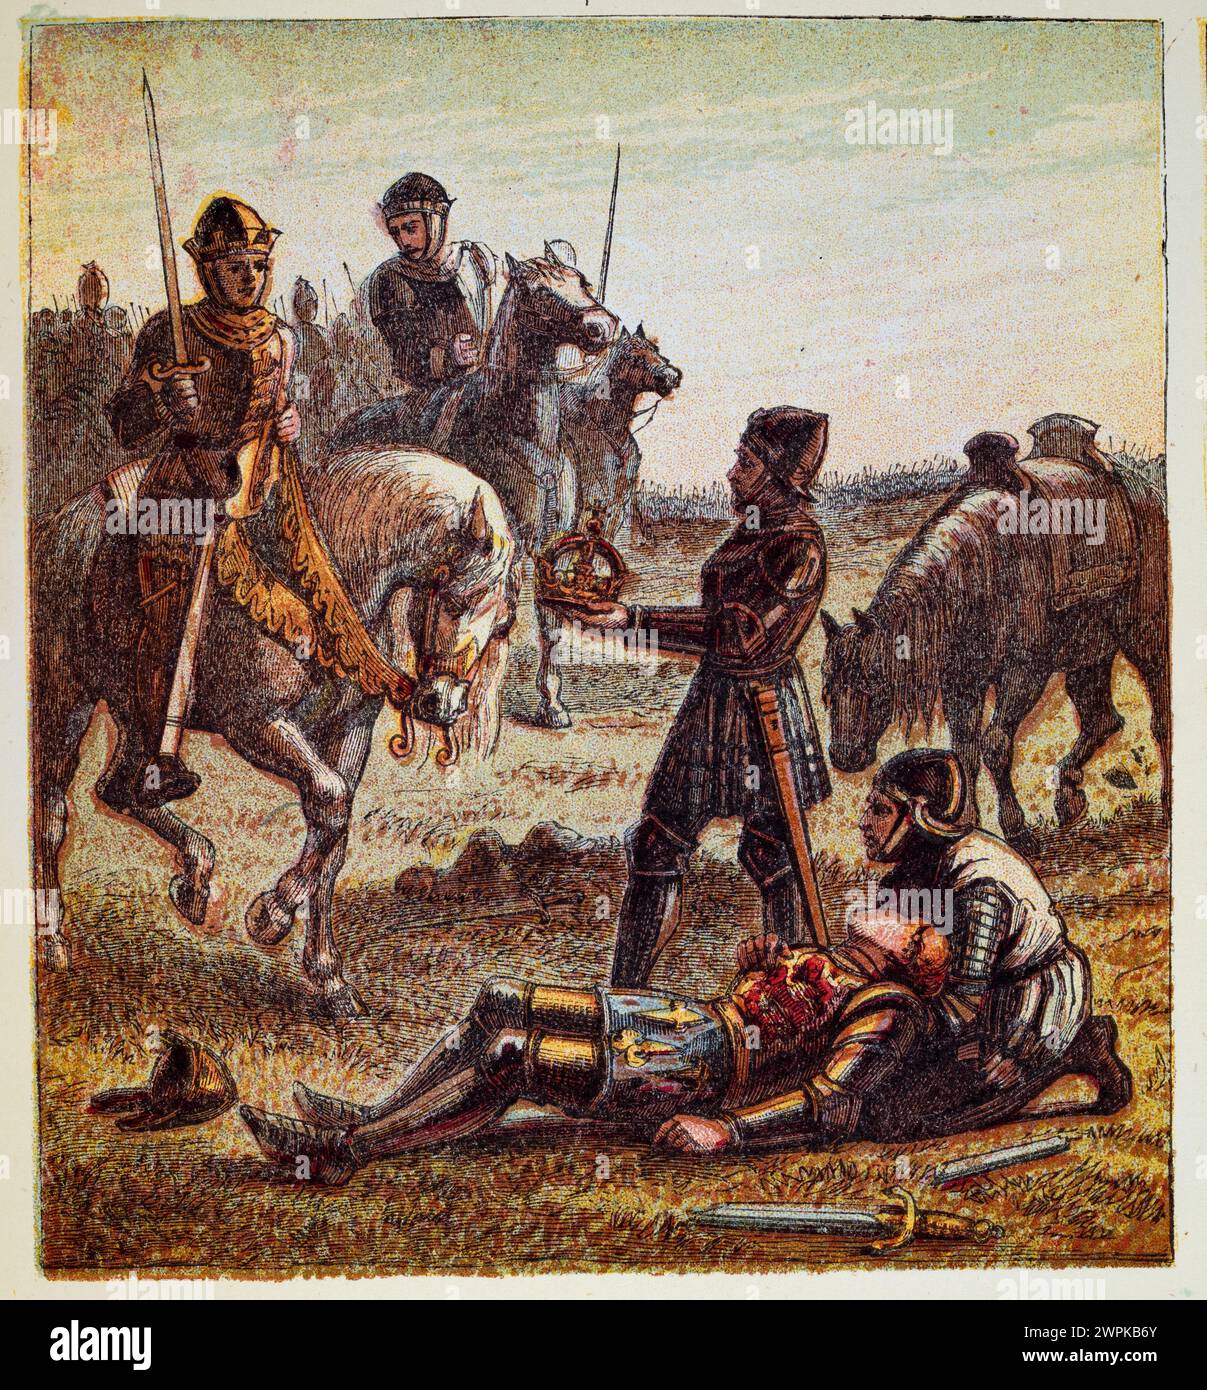 Illustration vintage de la bataille de Bosworth Field, mort du roi Richard III, roi donné à Henri VII, médiéval, Tudor, histoire anglaise Banque D'Images